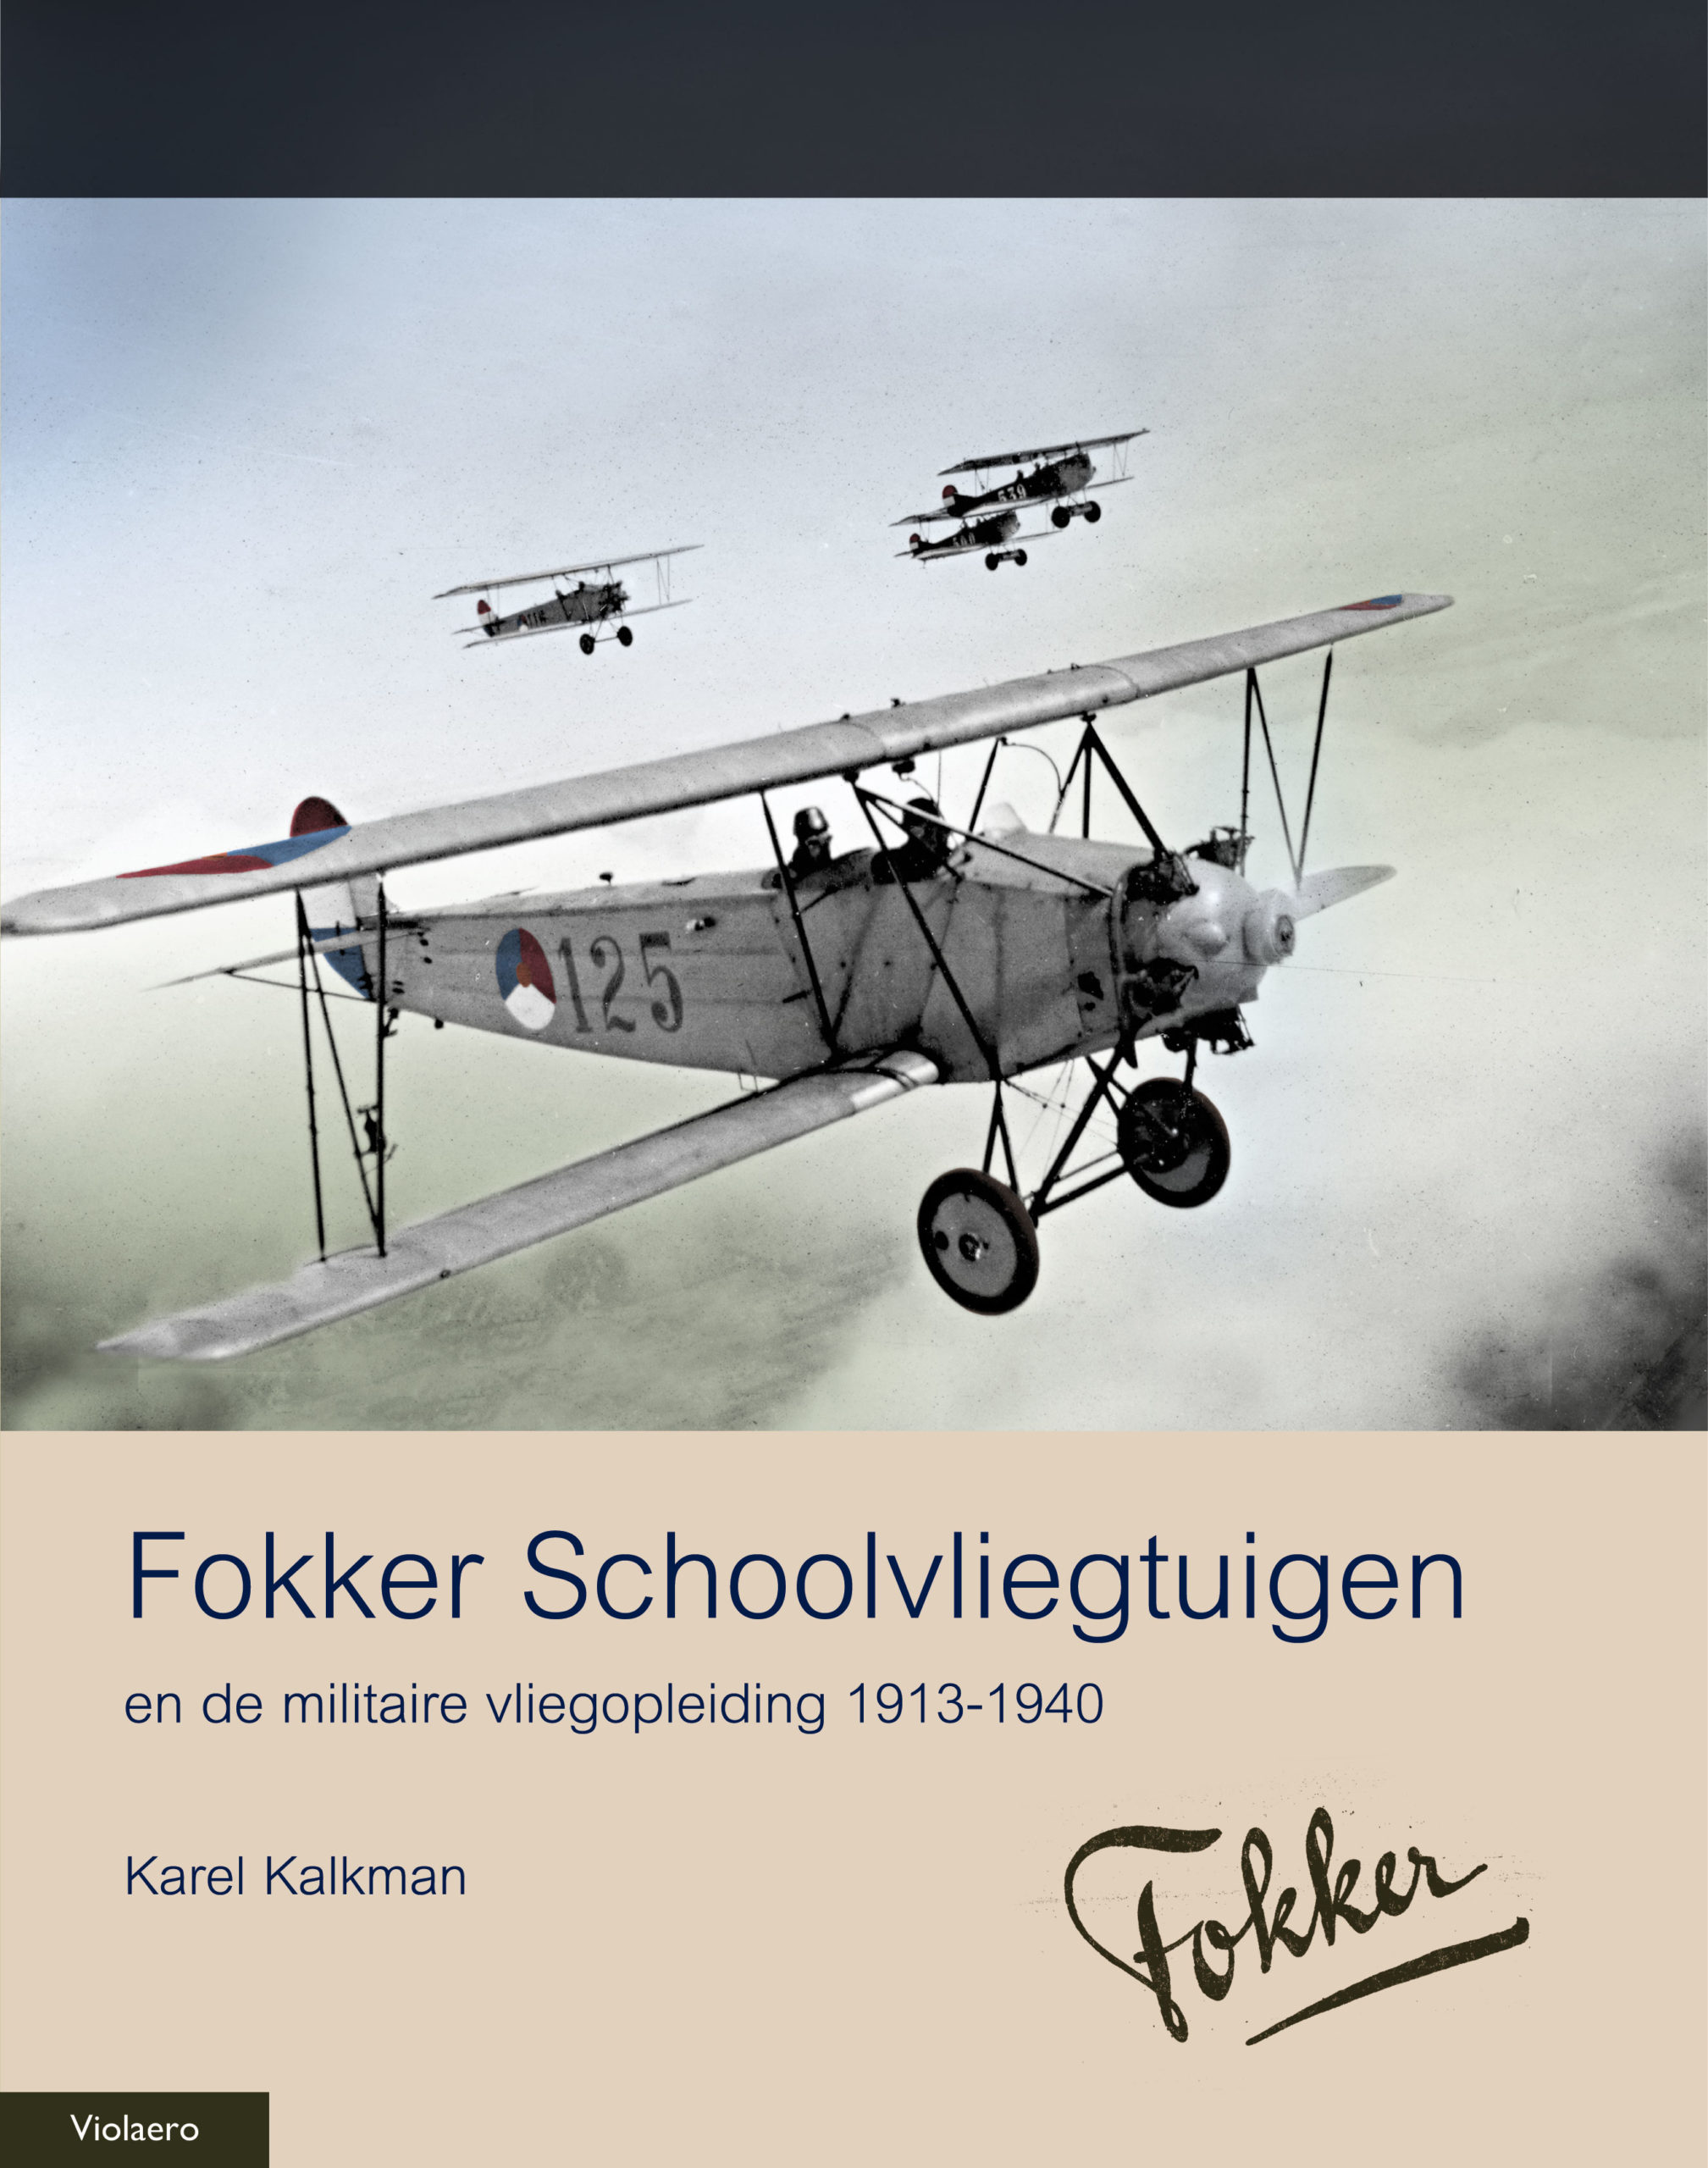 Naval Models - boeken -Violaero - Fokker Schoolvliegtuigen en de militaire vliegopleiding 1913-1940